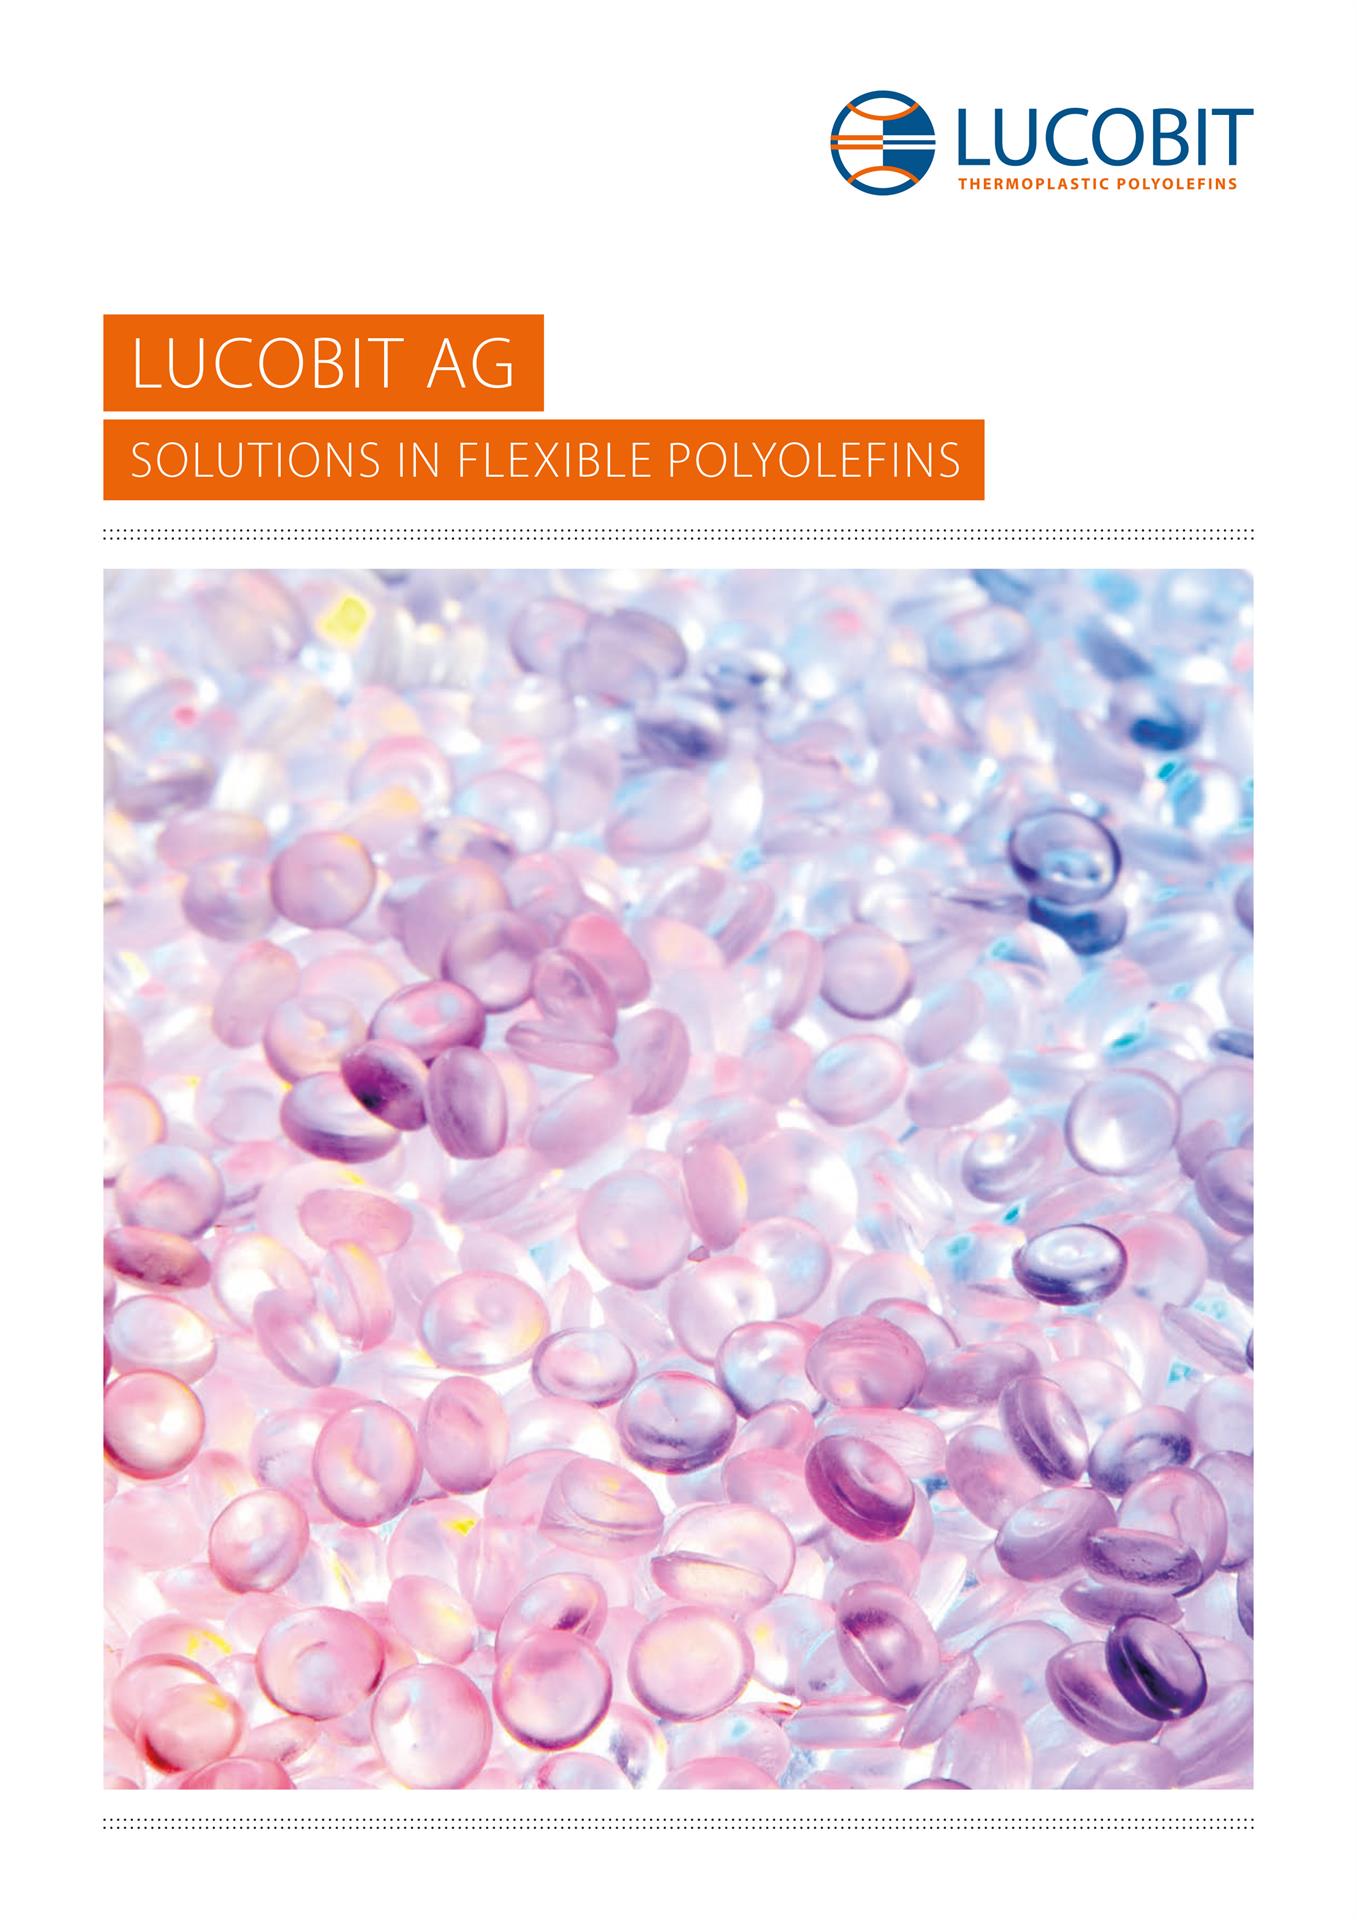 Brochure About Lucobit Thumbnail